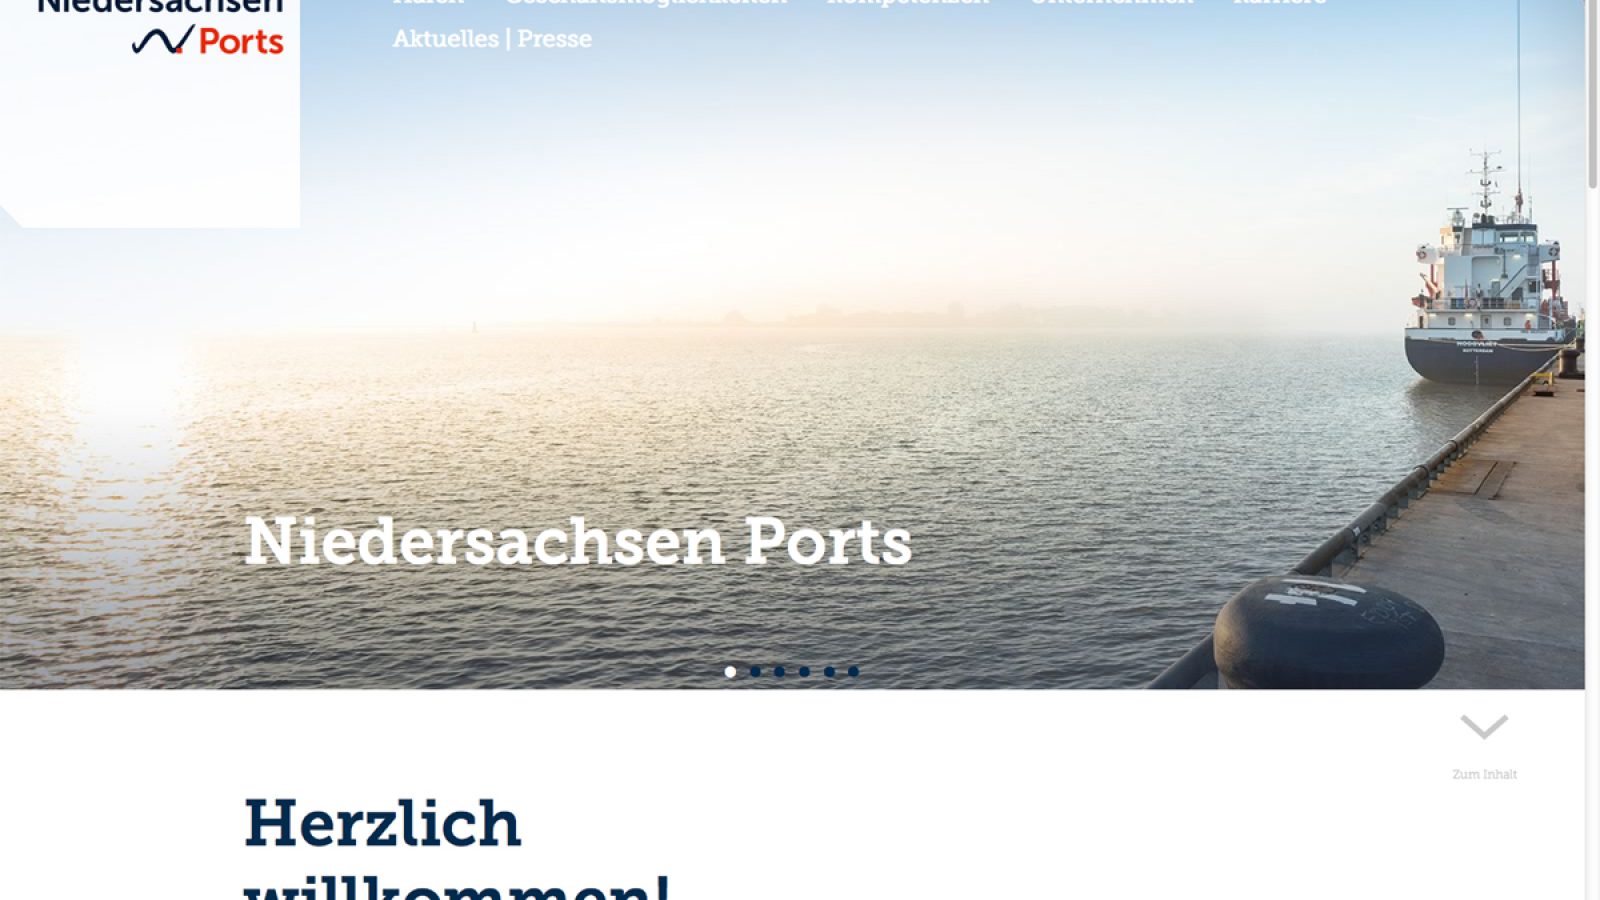 Hafen, Schiffe, Terminals: Christian O. Bruch fotografierte für Niedersachsen Ports.